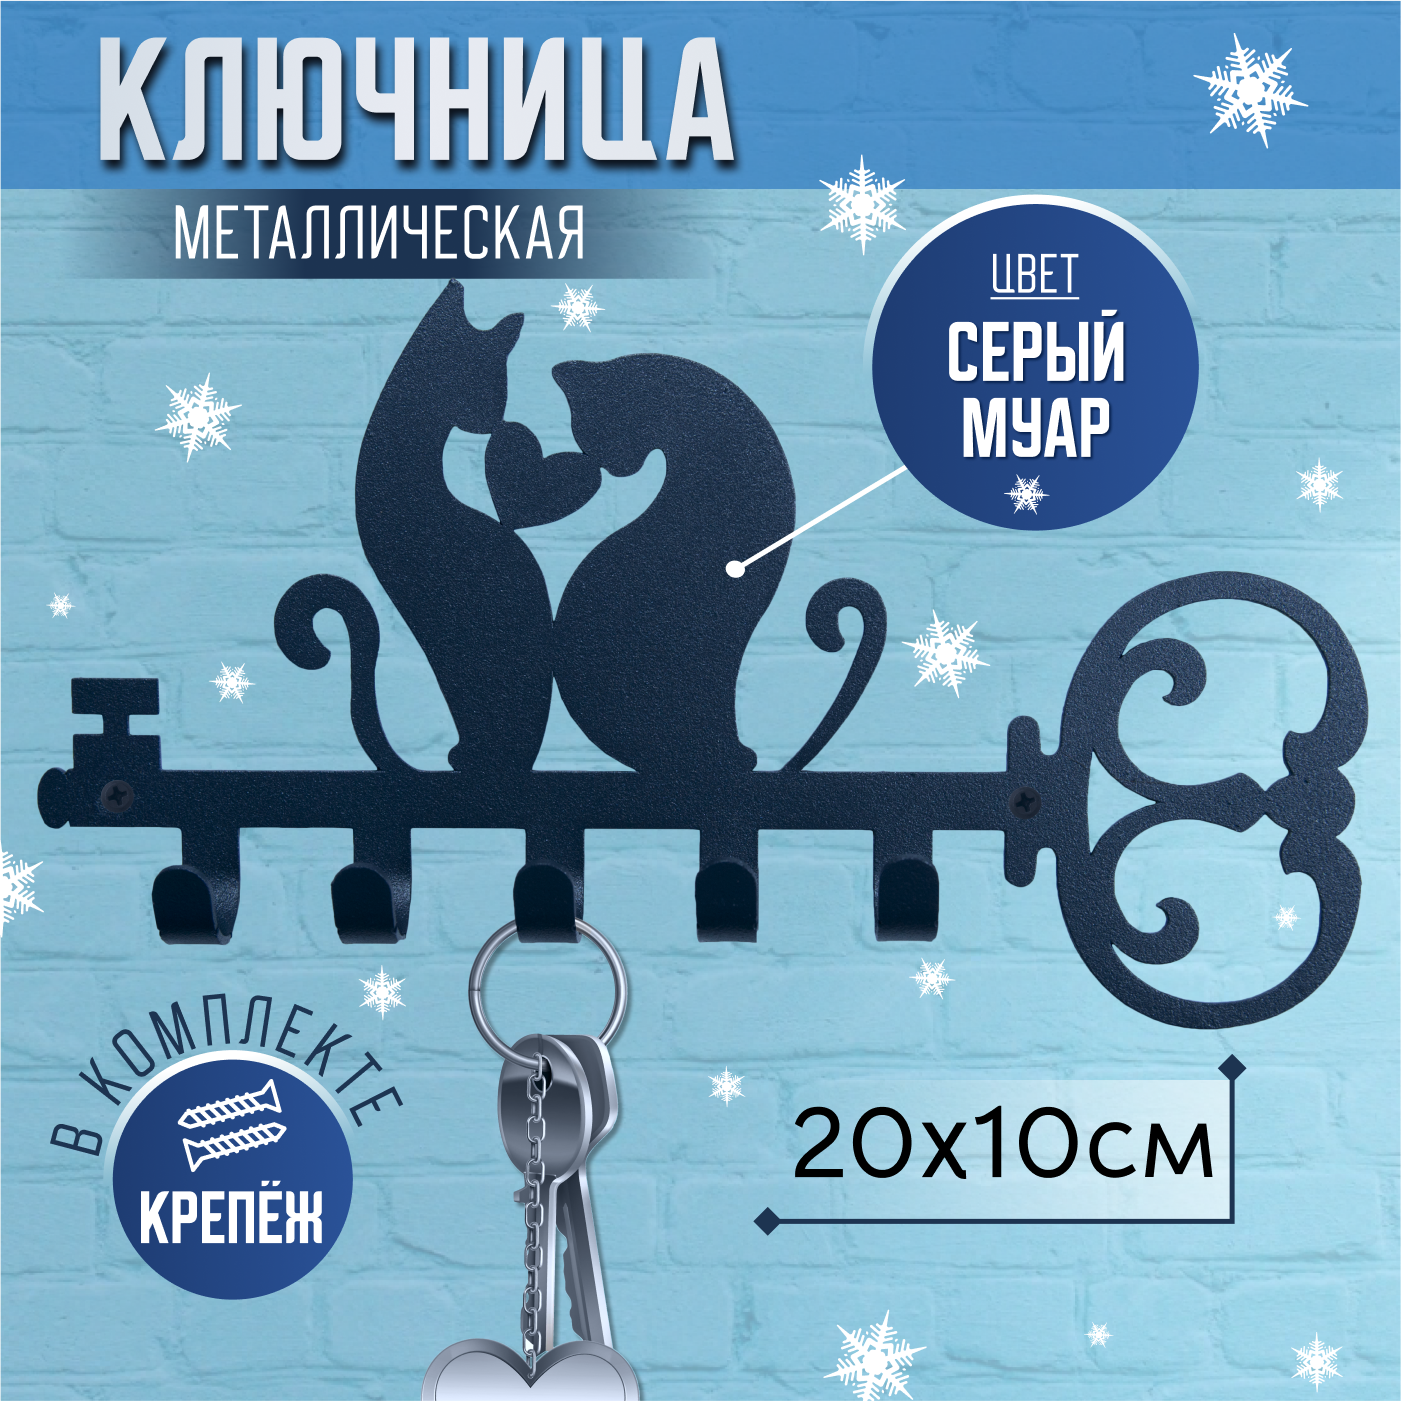 Ключница настенная металлическая, декоративная вешалка "Кот и Кошка", серый цвет, 20х10см